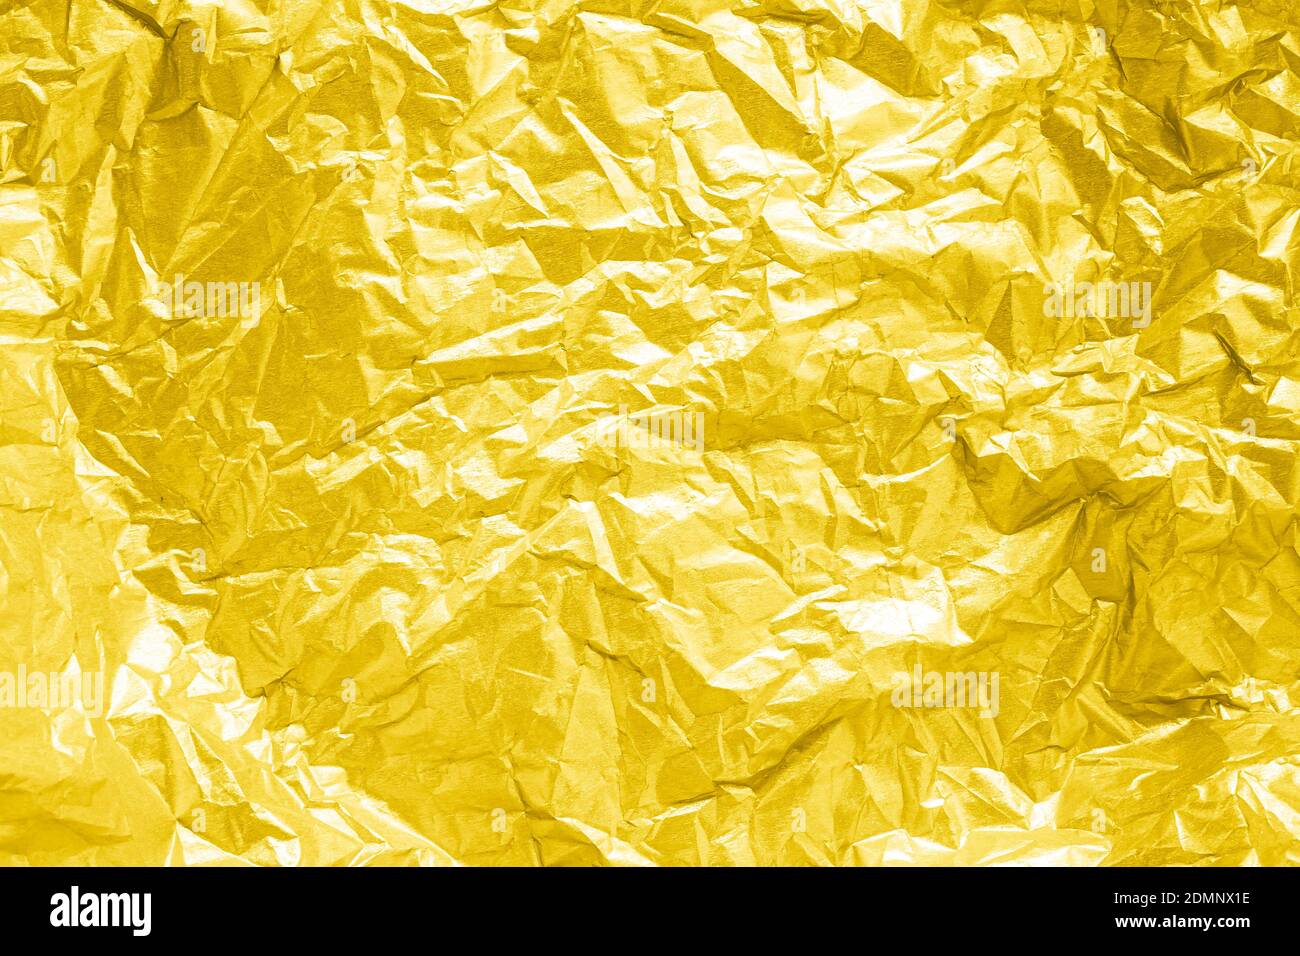 Abstrakt strukturierter gelber Hintergrund aus faltenem goldenem Papier Stockfoto